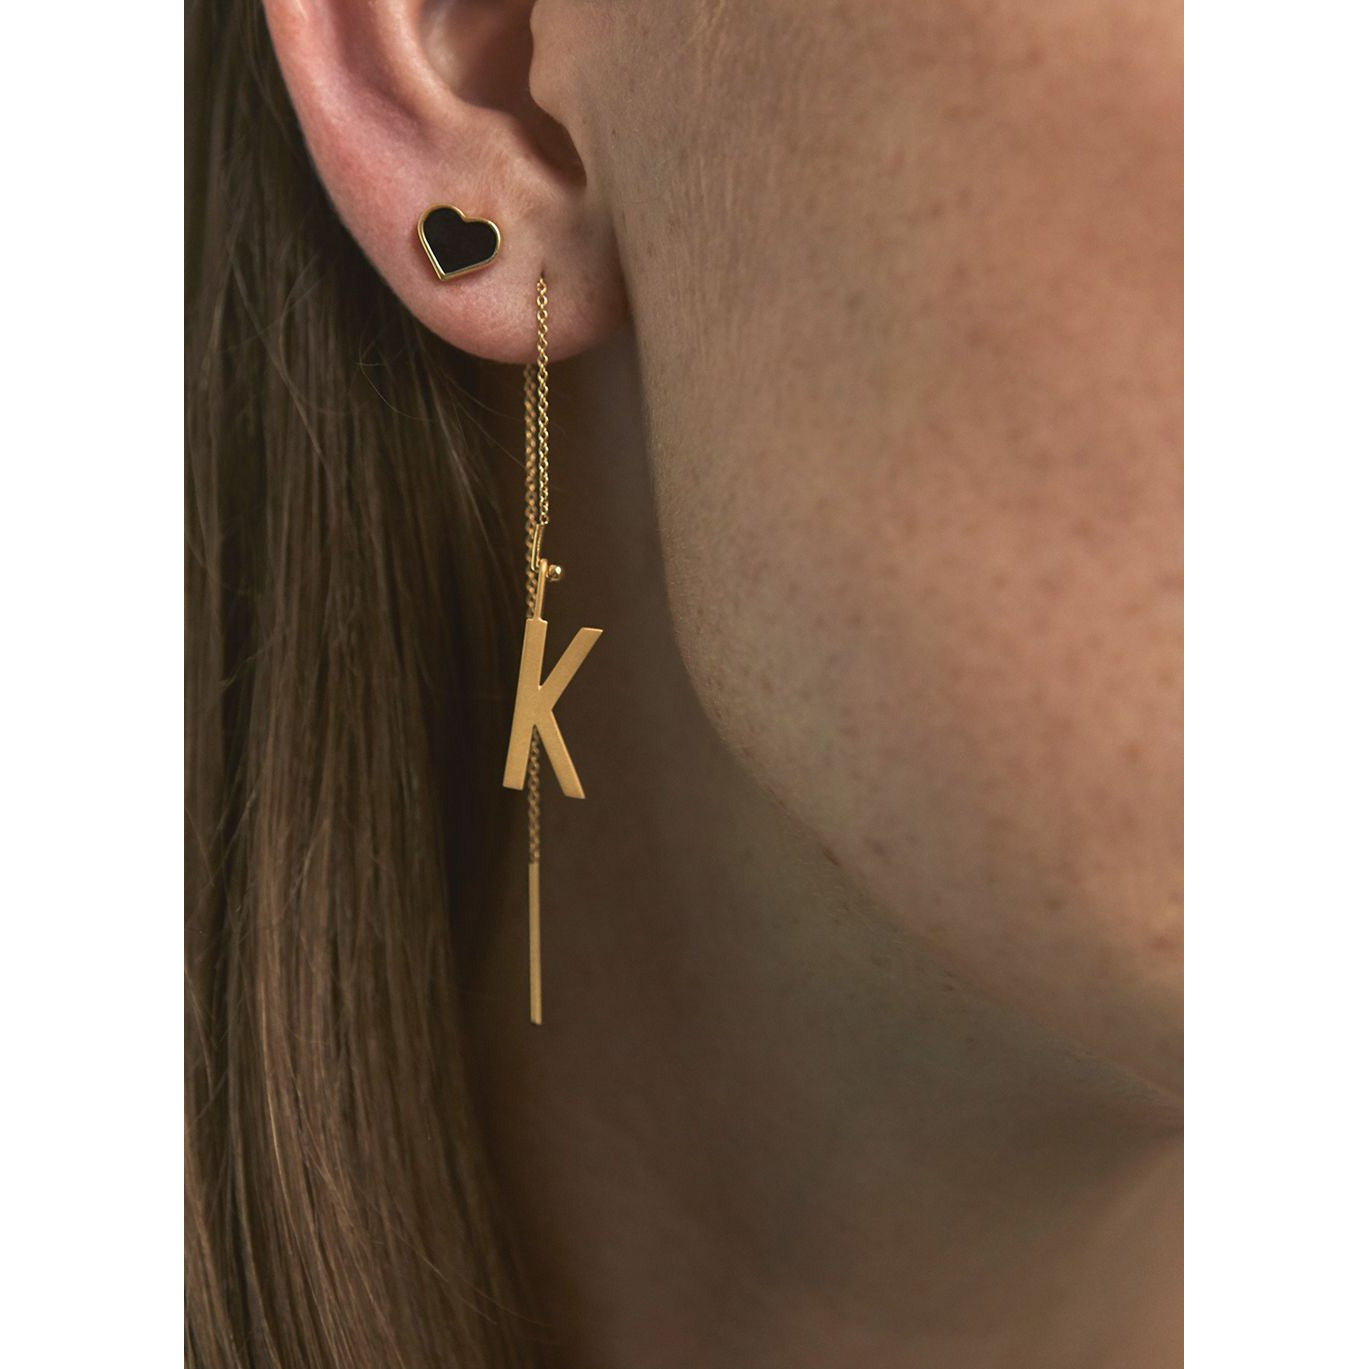 Design Letters Ear -stick emaljstjärna, svart/guld